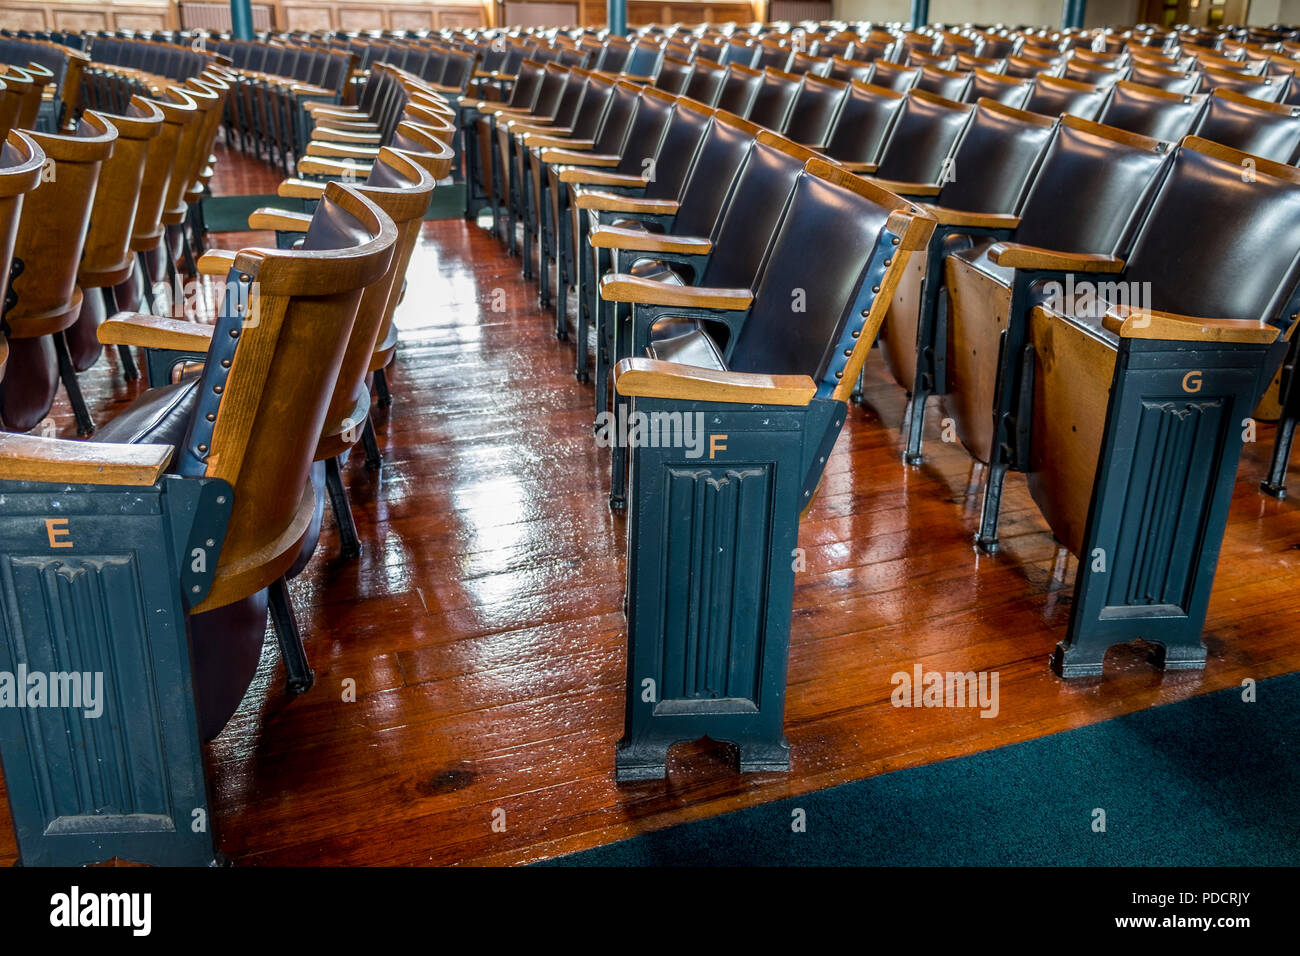 Rows of empty theatre seats Stock Photo